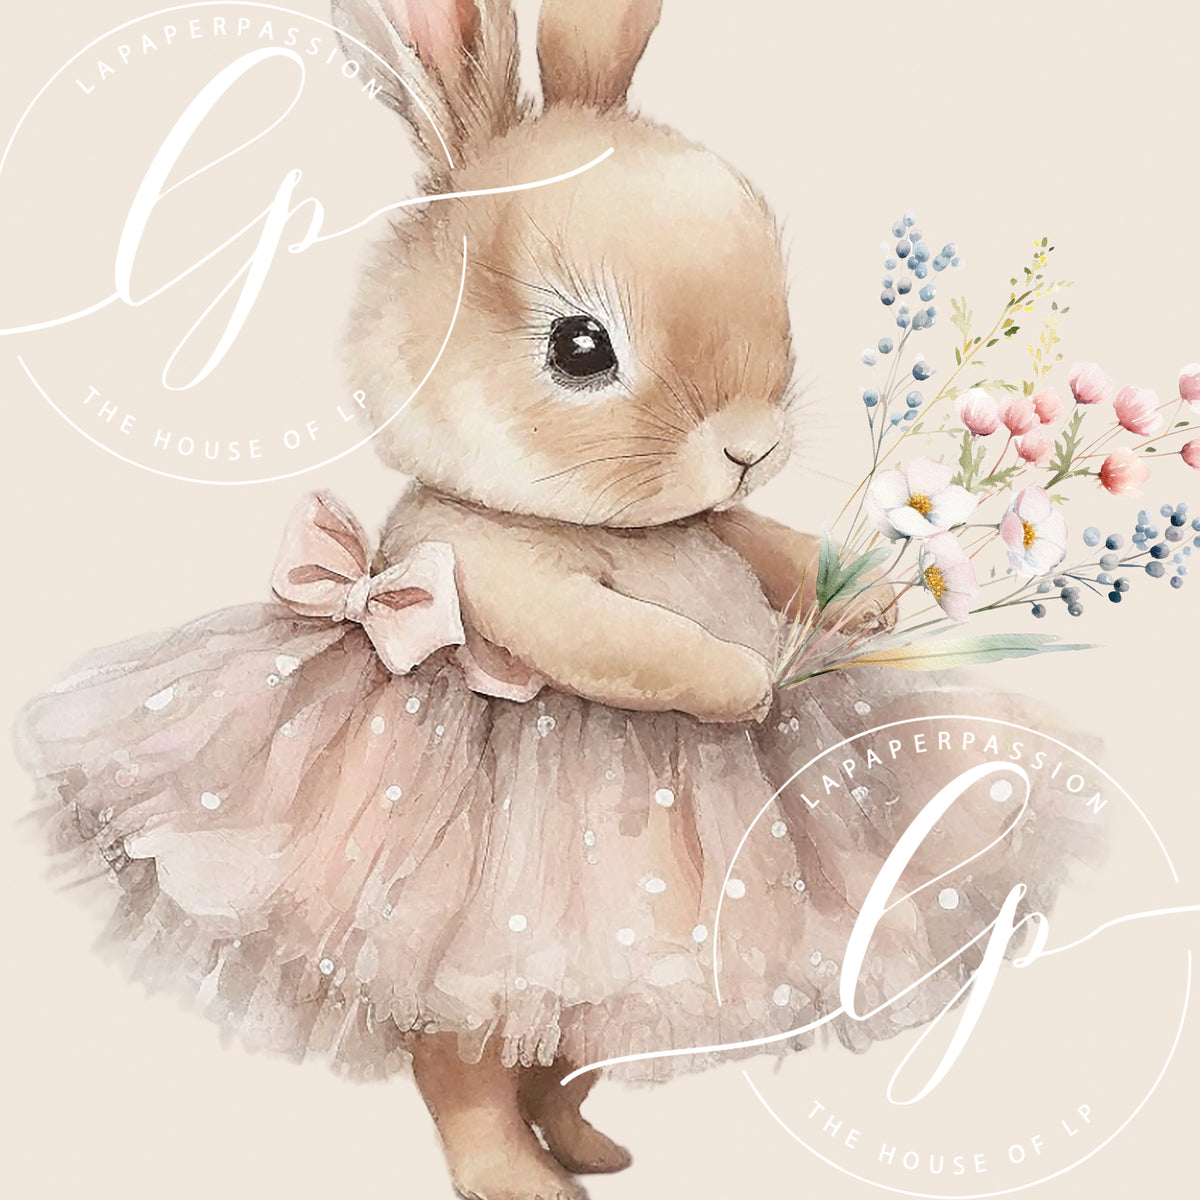 Whimsical Bunny Wall Art Prints